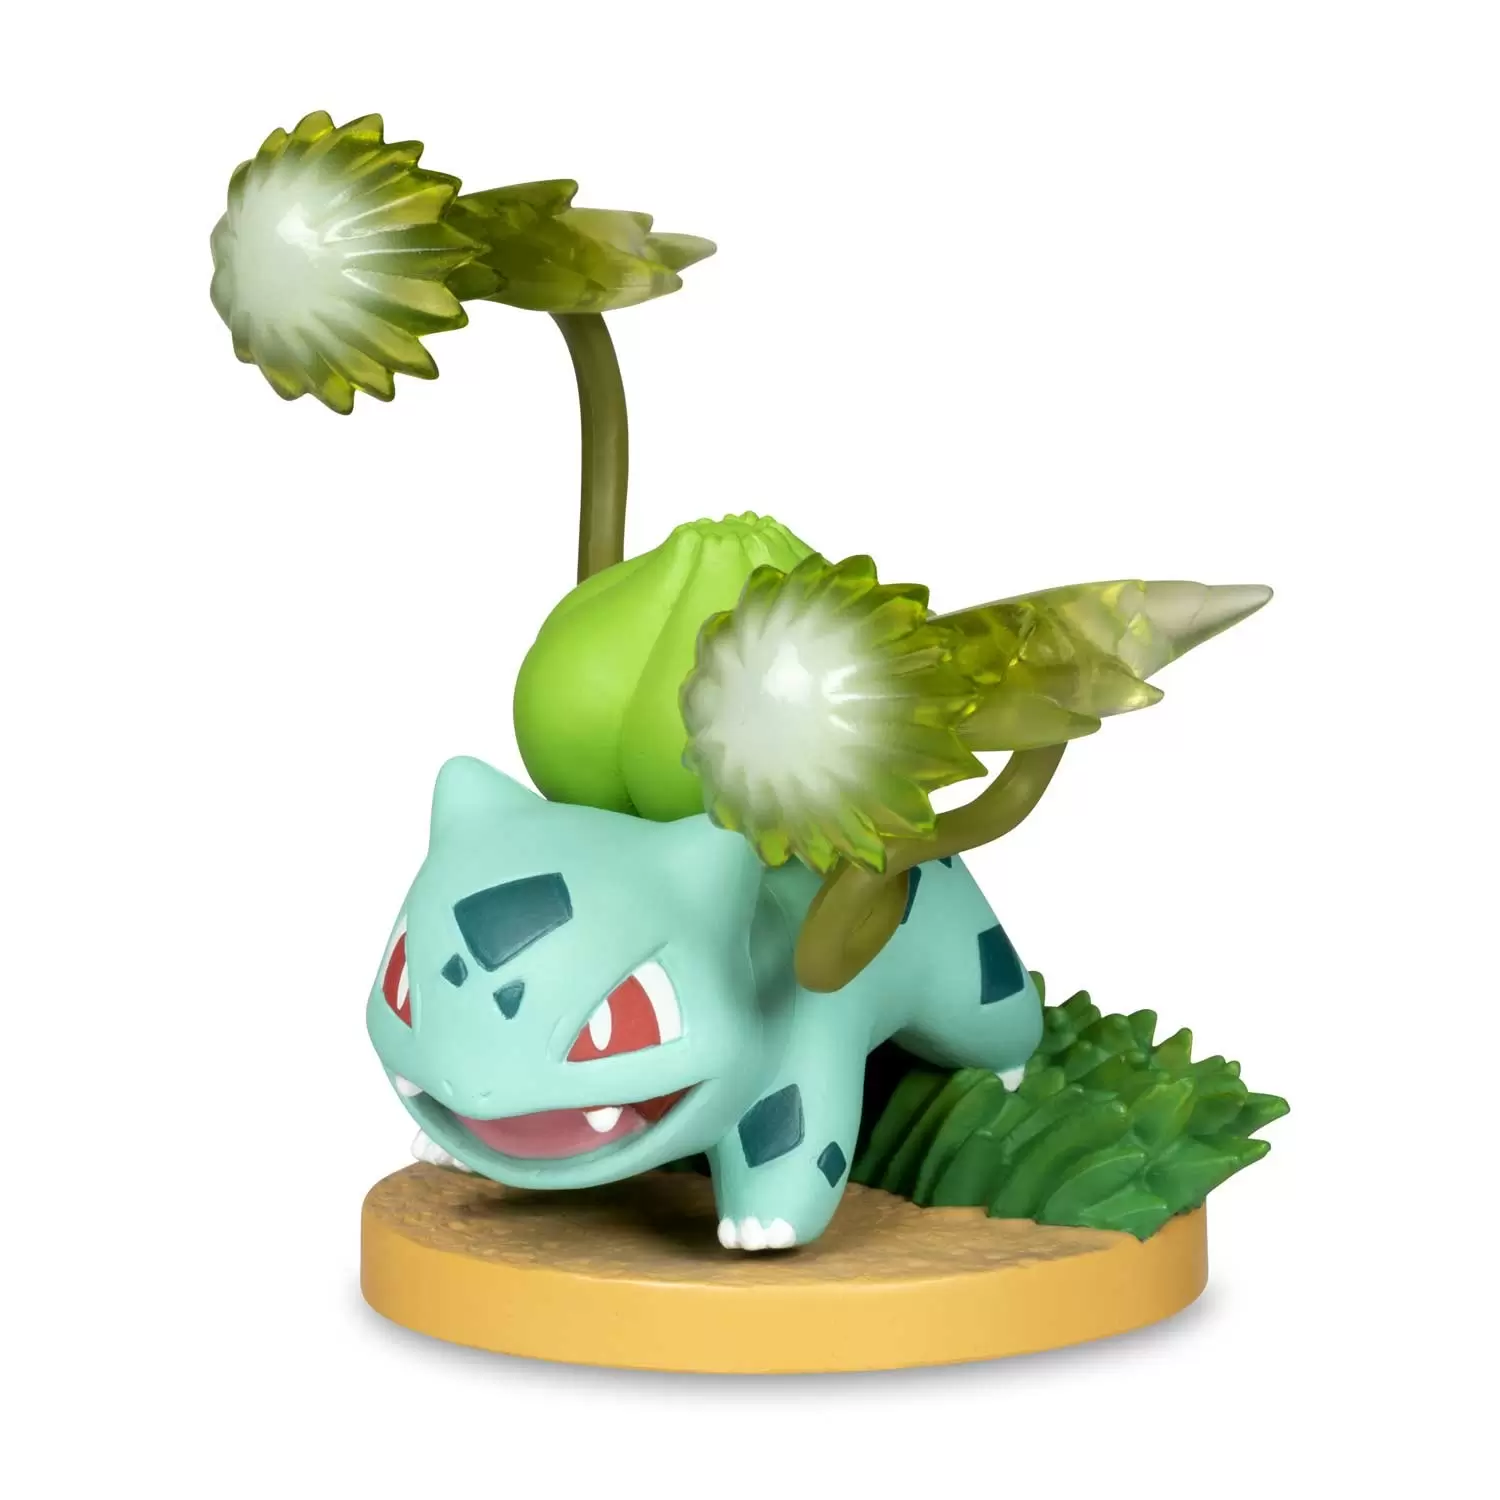 Pokémon Gallery Figures - Bulbasaur: Vine Whip